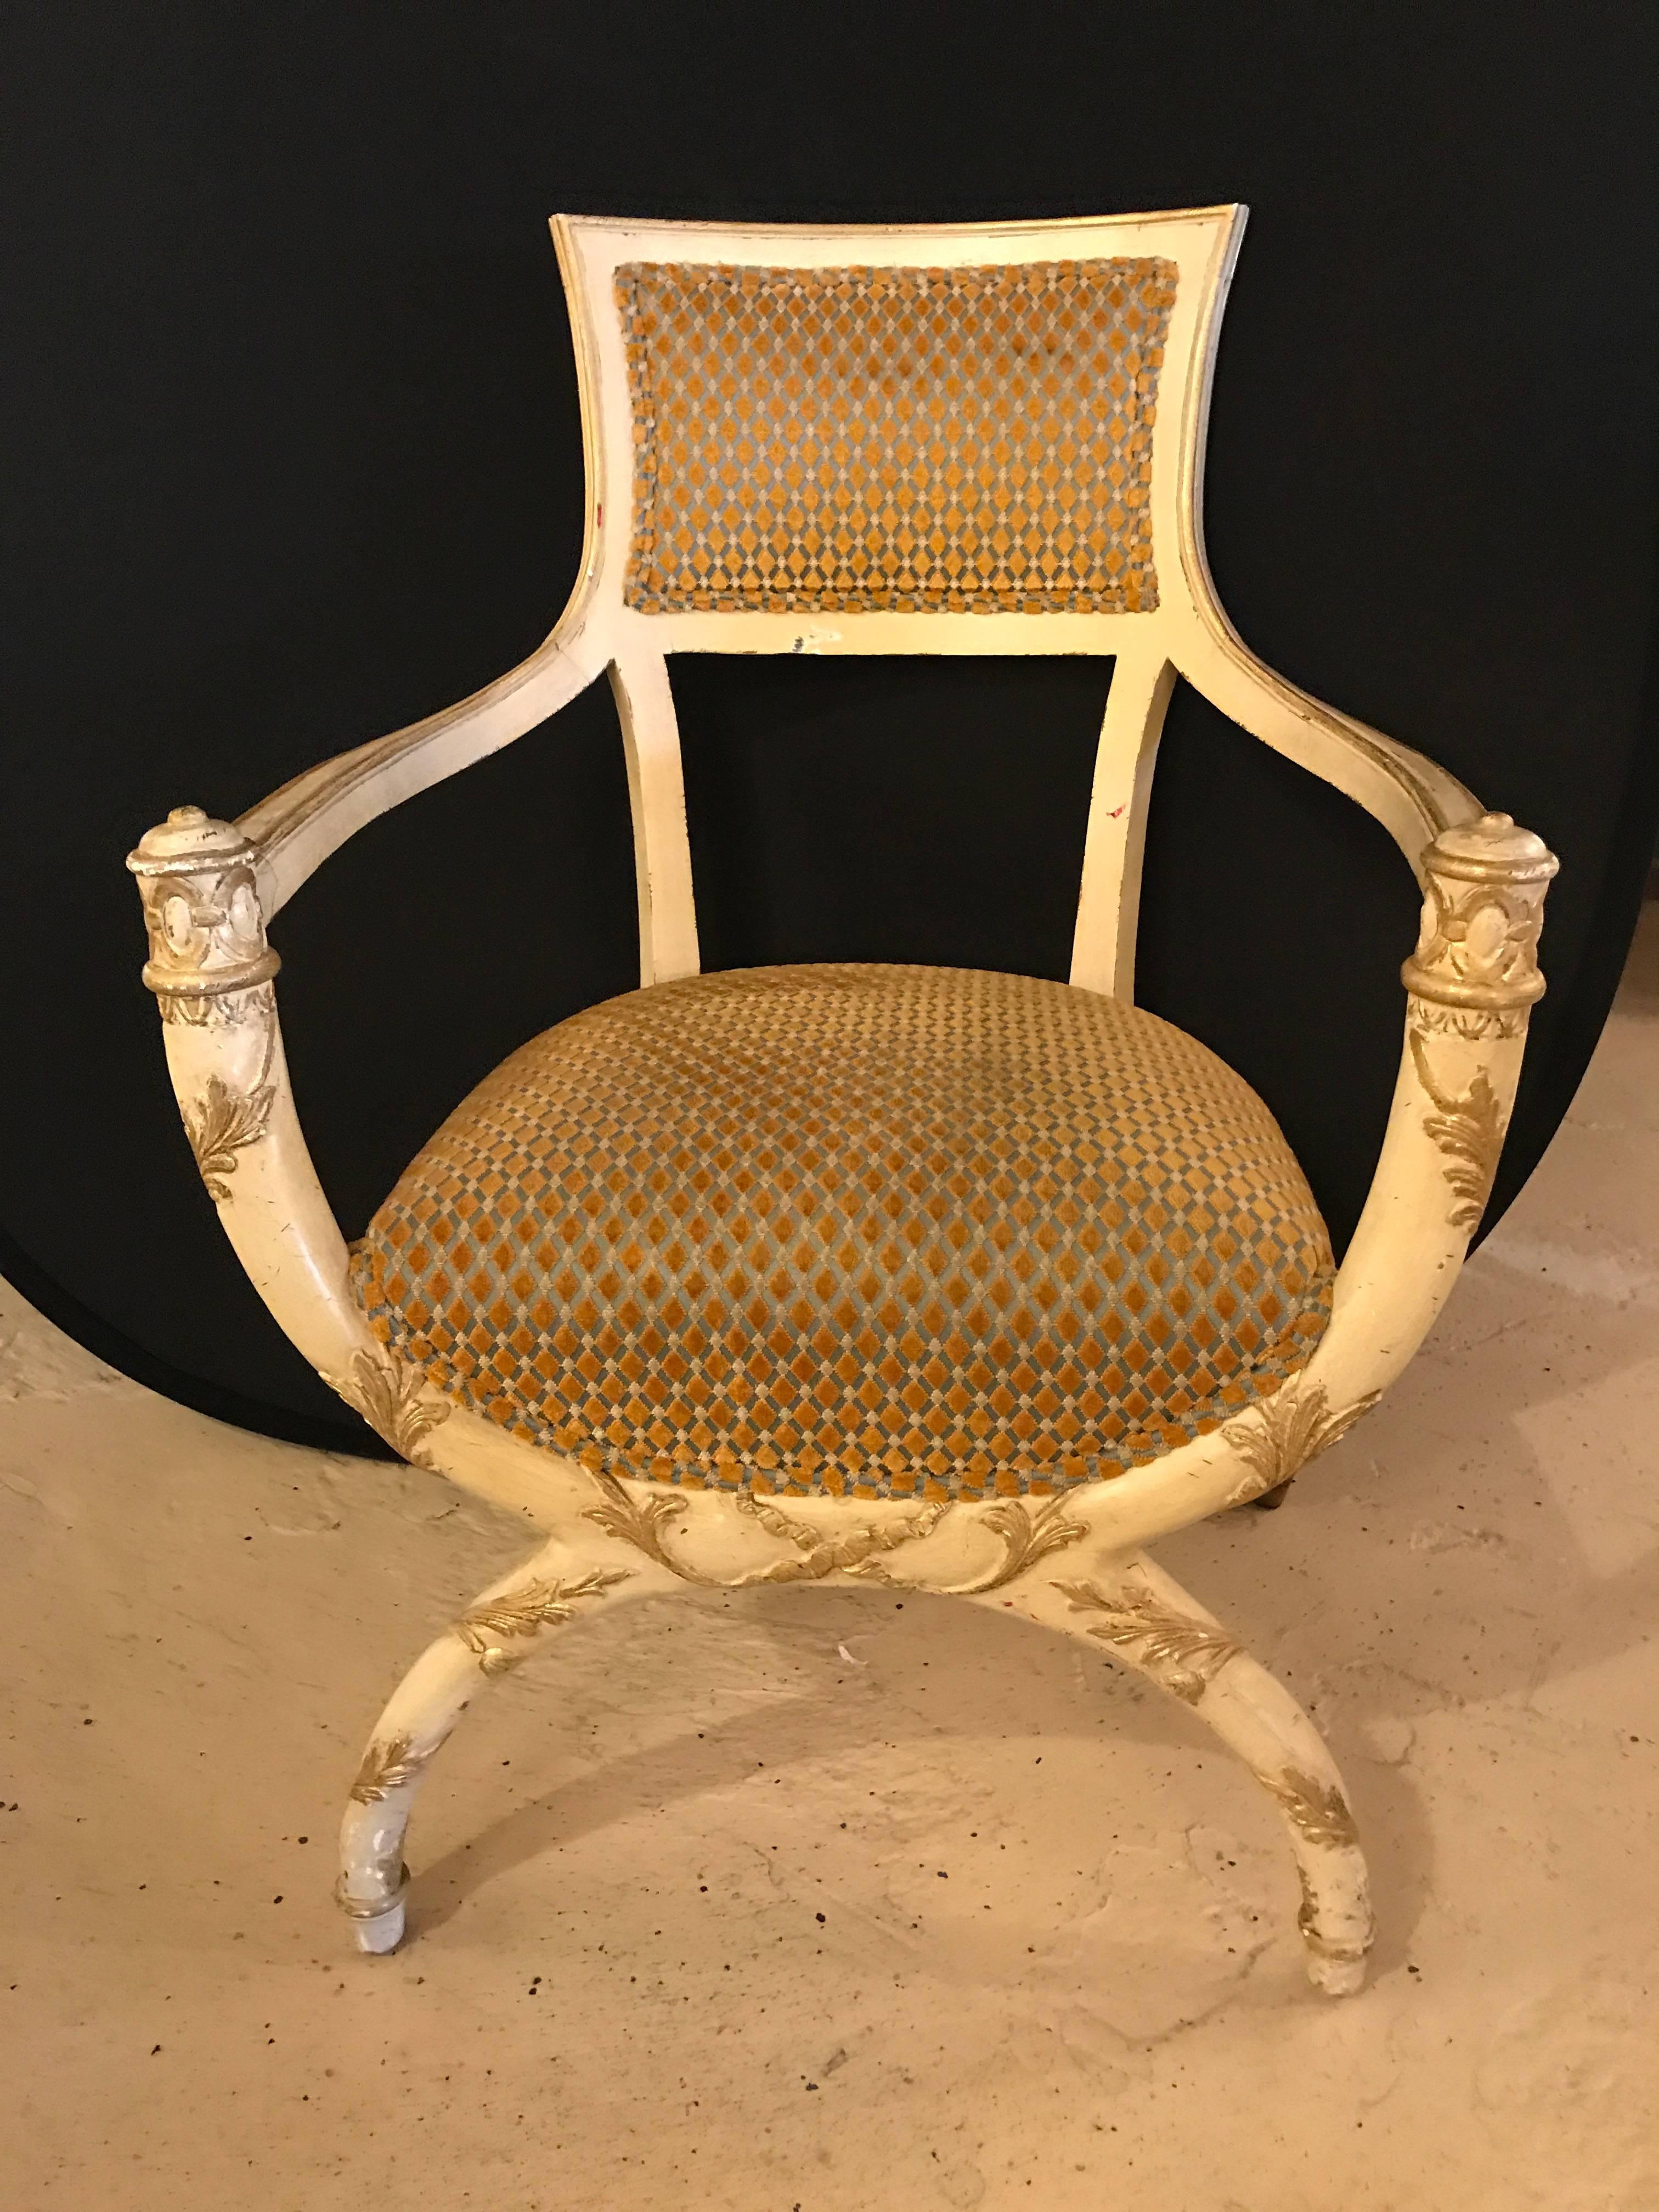 Fein geschnitzter Fauteuil, der Maison Jansen zugeschrieben wird, in seiner ursprünglichen Ausführung. Dieser wundervoll geschnitzte und vergoldete, bemalte Sessel aus der Hollywood-Regency-Ära ist eine wunderbare Ergänzung für jeden Raum in Ihrem